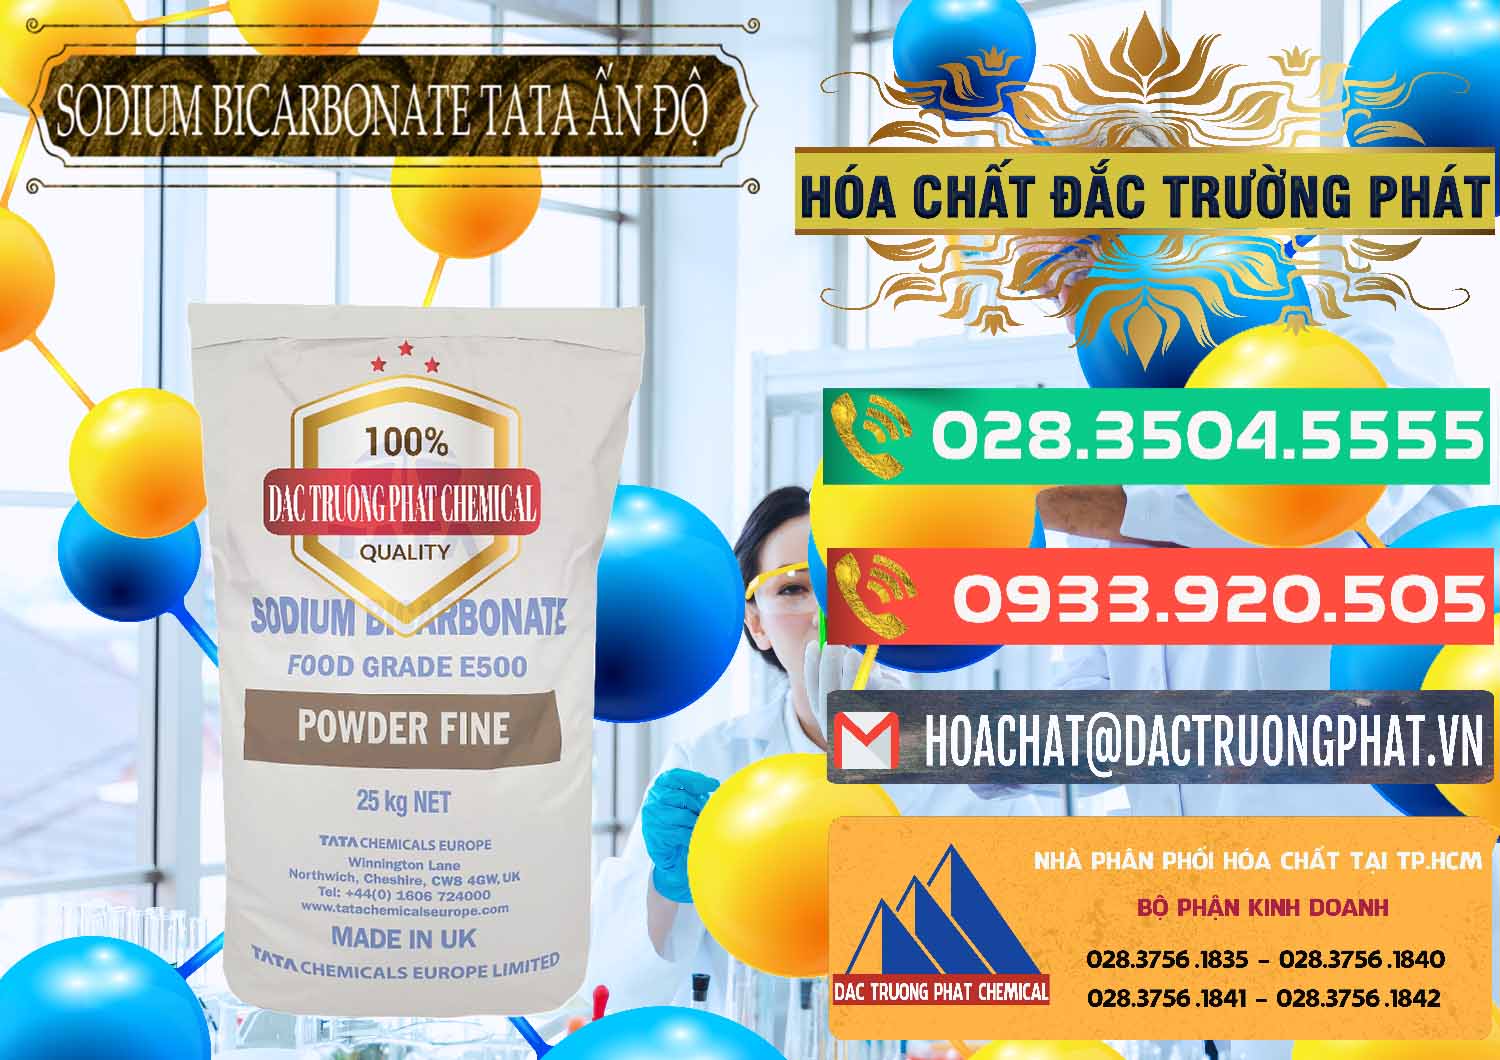 Nhà cung ứng _ bán Sodium Bicarbonate – Bicar NaHCO3 E500 Thực Phẩm Food Grade Tata Ấn Độ India - 0261 - Cty phân phối và kinh doanh hóa chất tại TP.HCM - congtyhoachat.com.vn